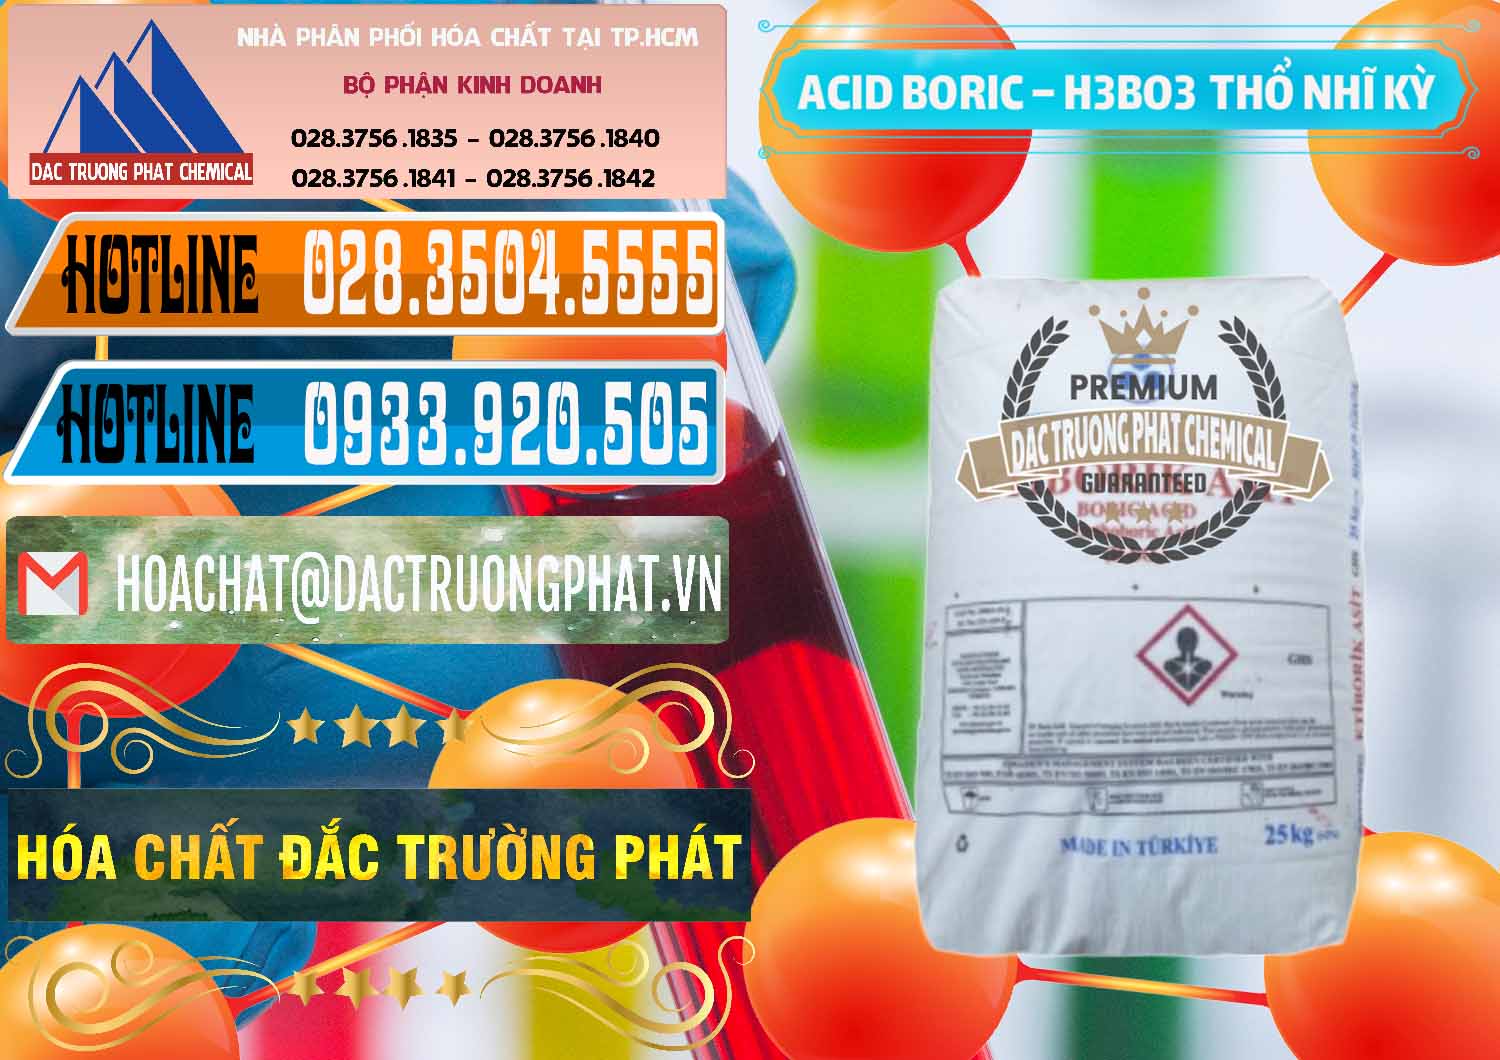 Cty chuyên bán và cung ứng Acid Boric – Axit Boric H3BO3 Etimaden Thổ Nhĩ Kỳ Turkey - 0369 - Cty phân phối & kinh doanh hóa chất tại TP.HCM - stmp.net